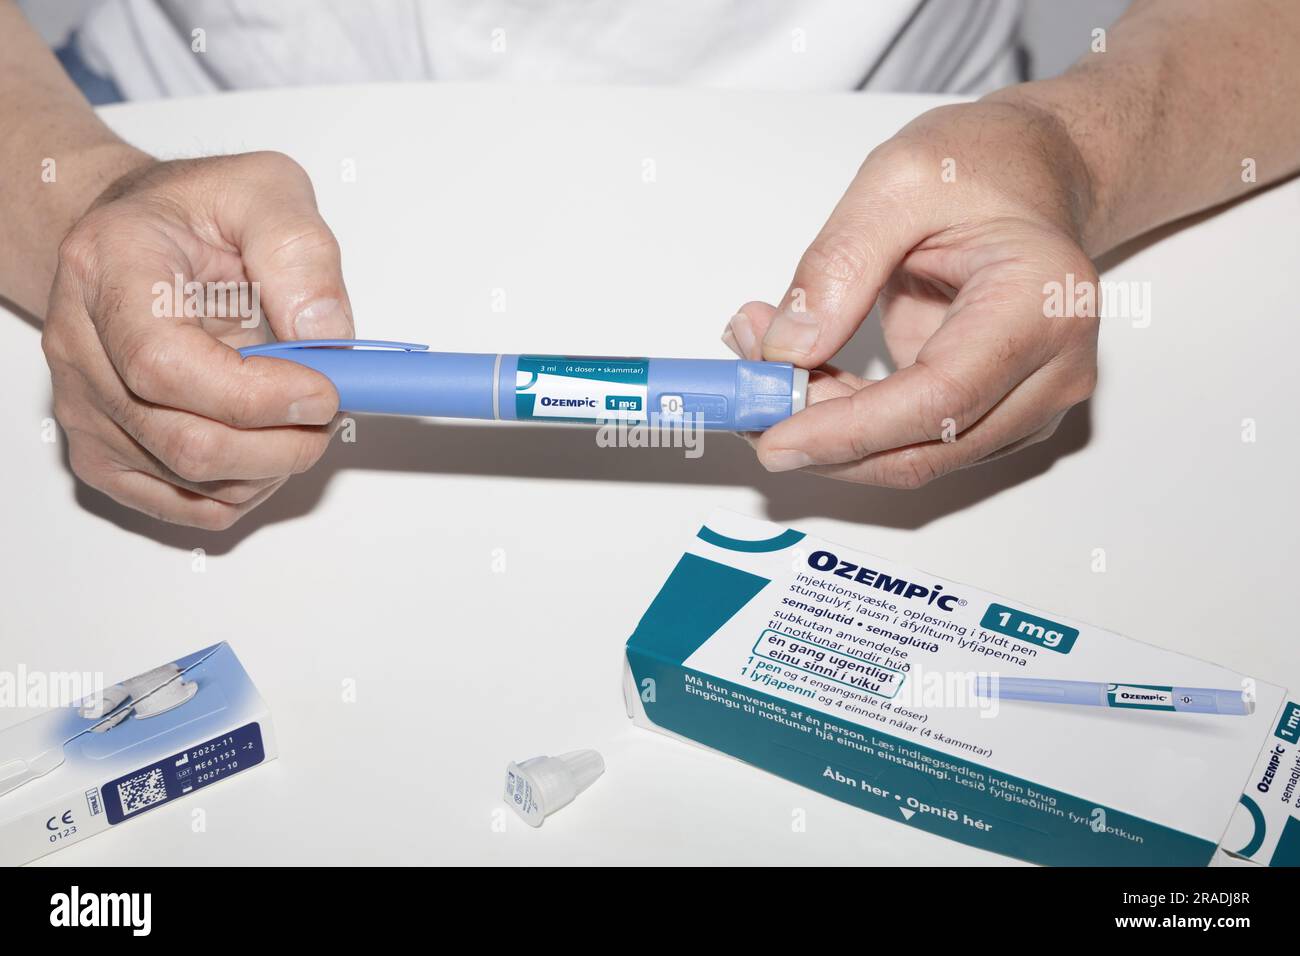 Ozempic Insulininjektions-Pen oder Insulinpatronen-Pen für Diabetiker. Medizinische Geräte für Diabetesvorsteher. Stockfoto